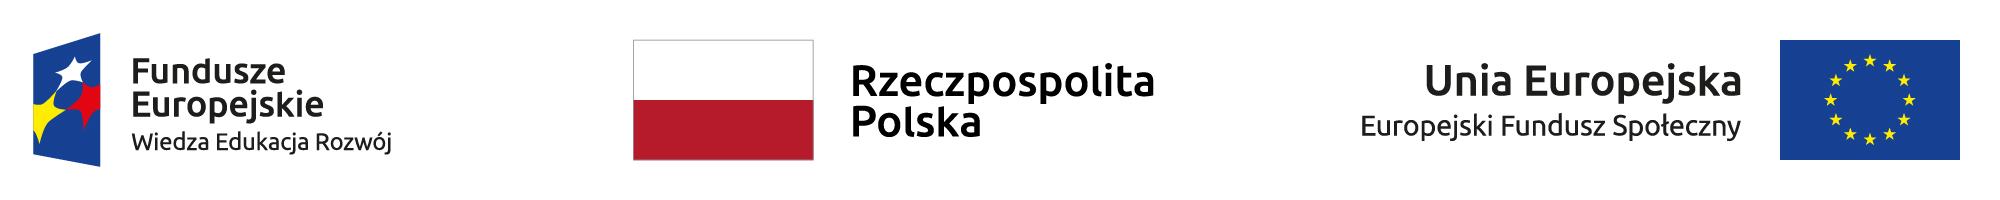 Logo Funduszy Europejskich (Program Wiedza Edukacja Rozwój), flaga Rzeczypospolitej Polskiej z podpisem oraz flaga Unii Europejskiej (Europejskiego Funduszu Społecznego)